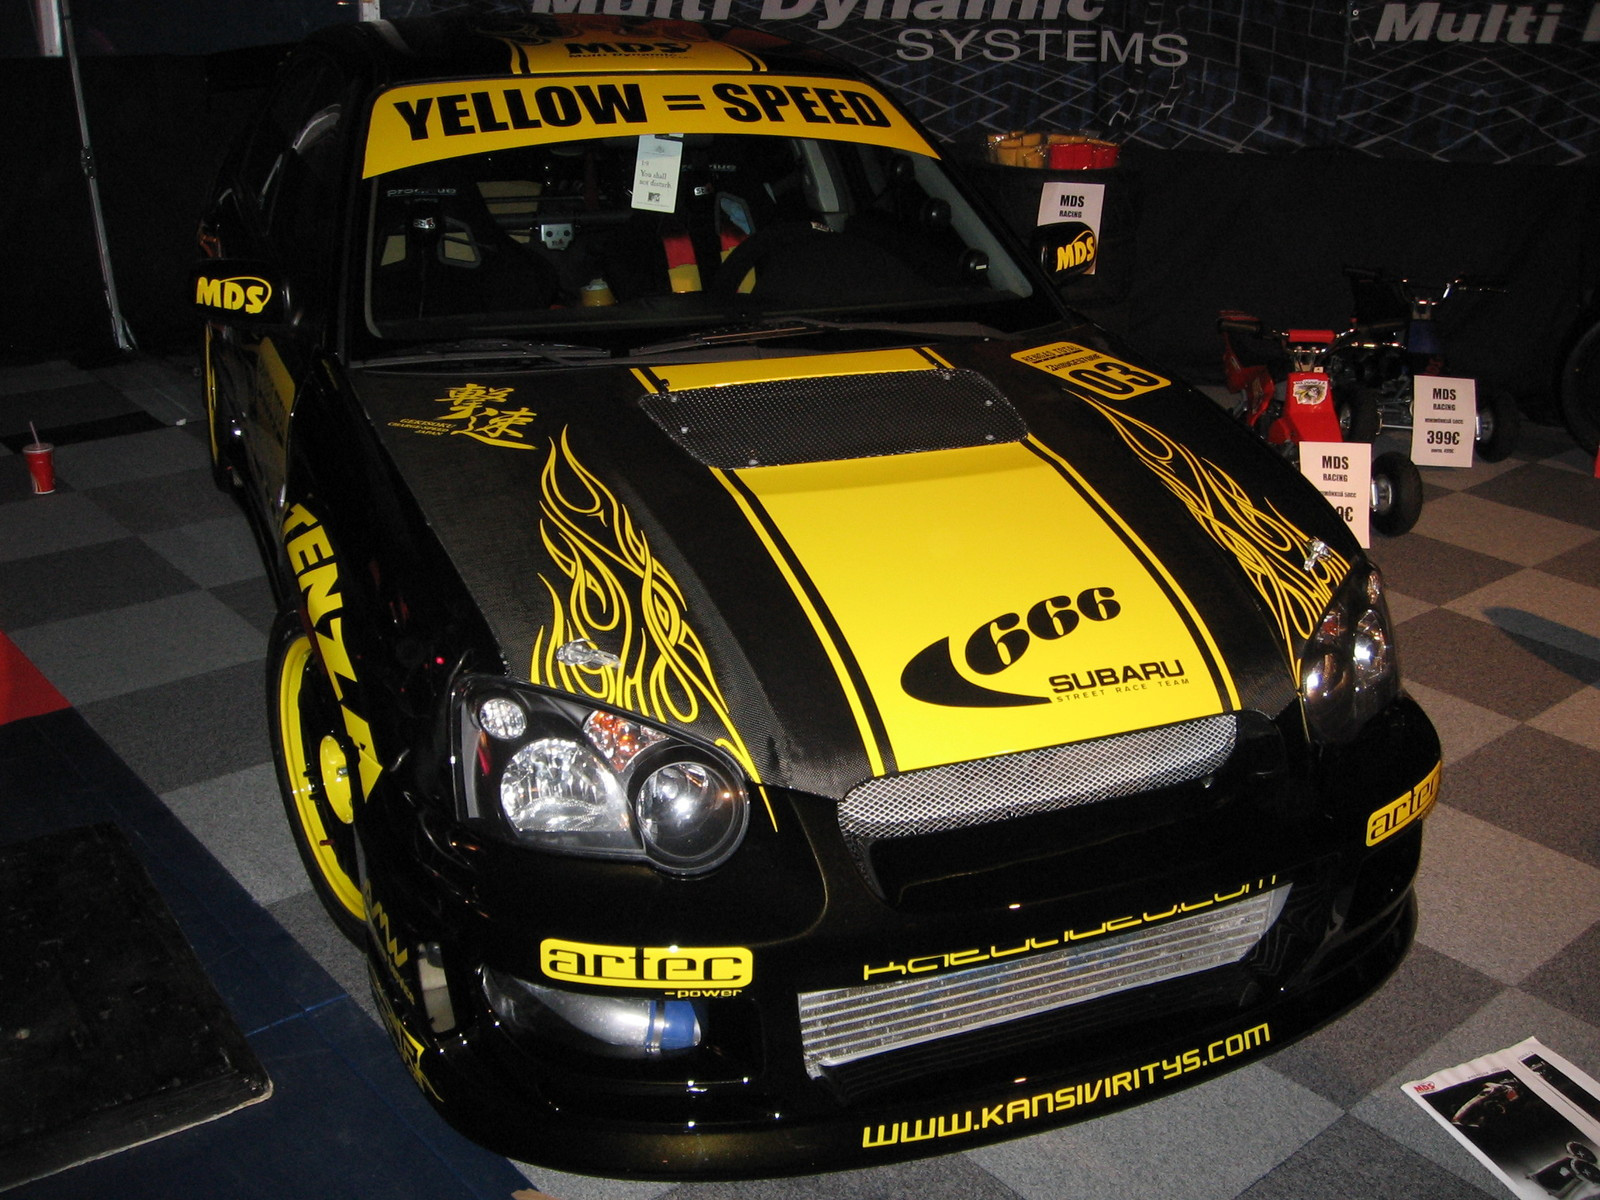 X-treme Car Show 9.10.2005, 666-Subaru Kansiviritys.com